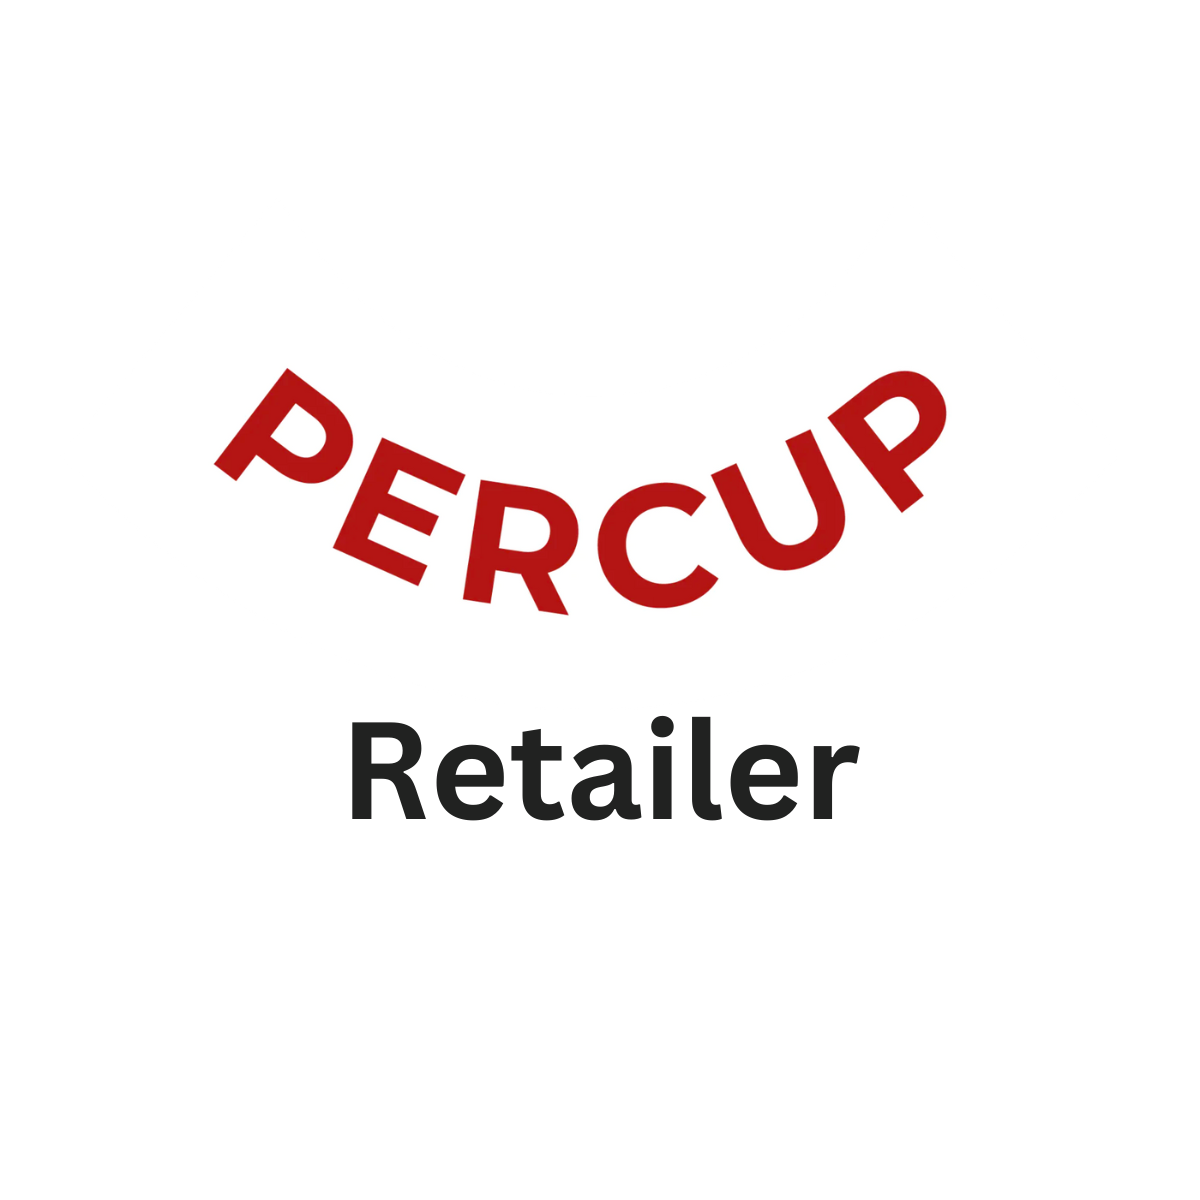 Percup Retailer